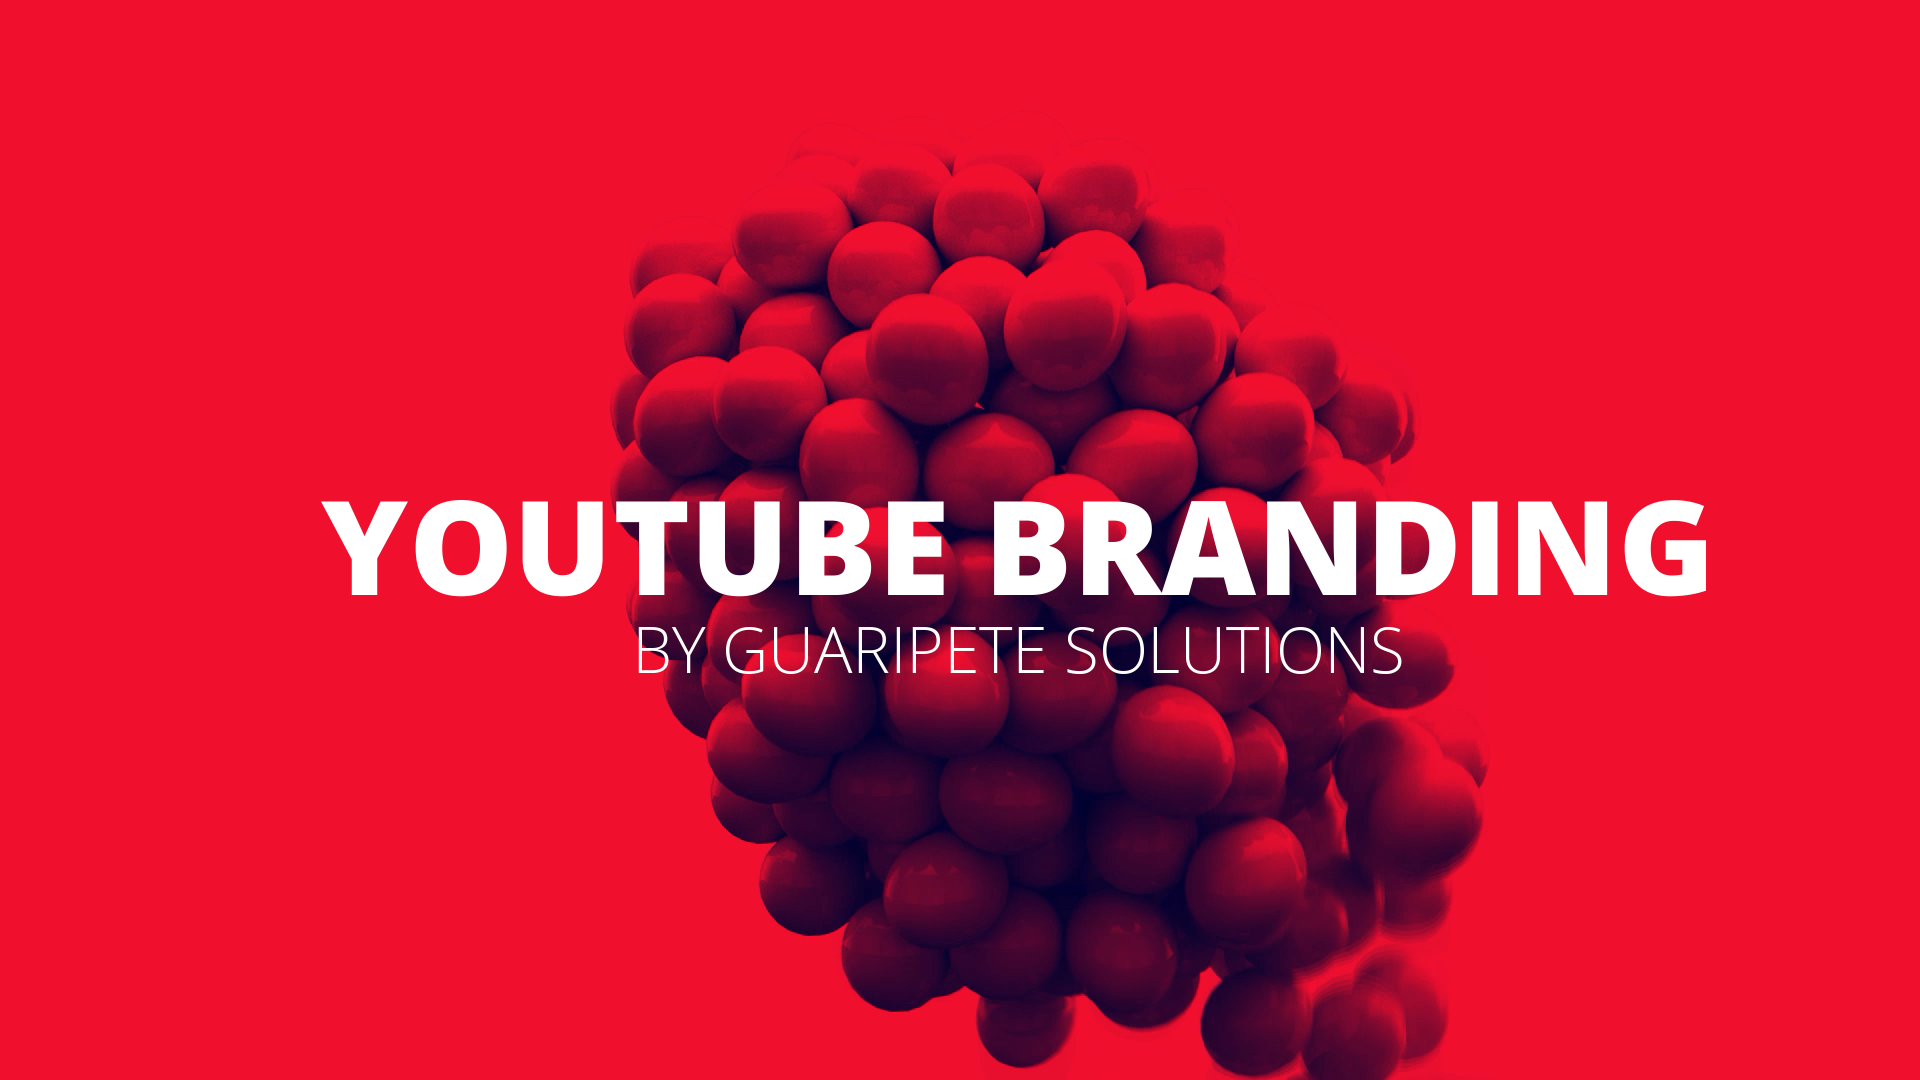 YouTube Branding Training Program